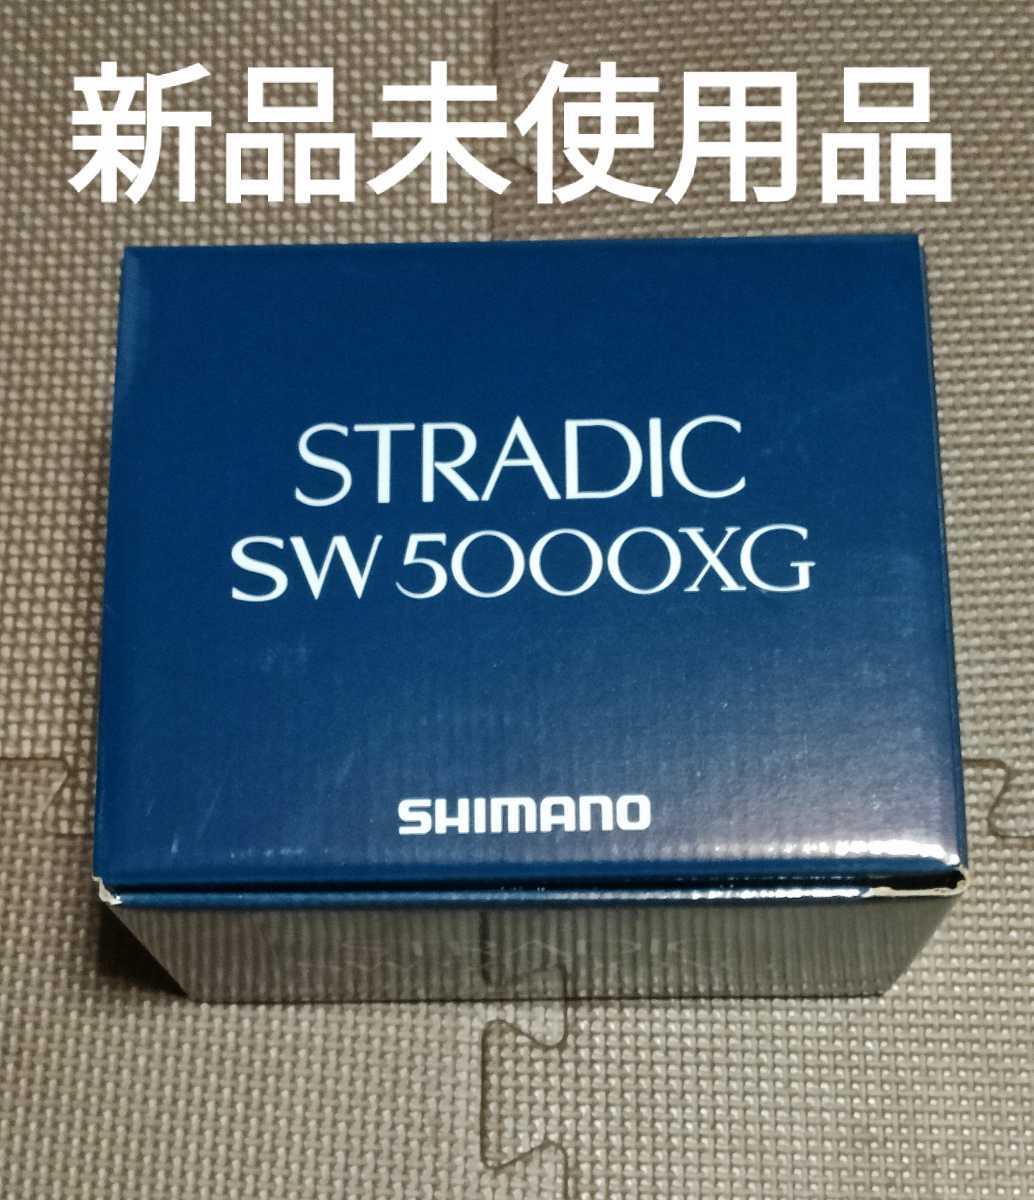 シマノ ストラディックSW 5000XG shimano stradic sw 5000 xg